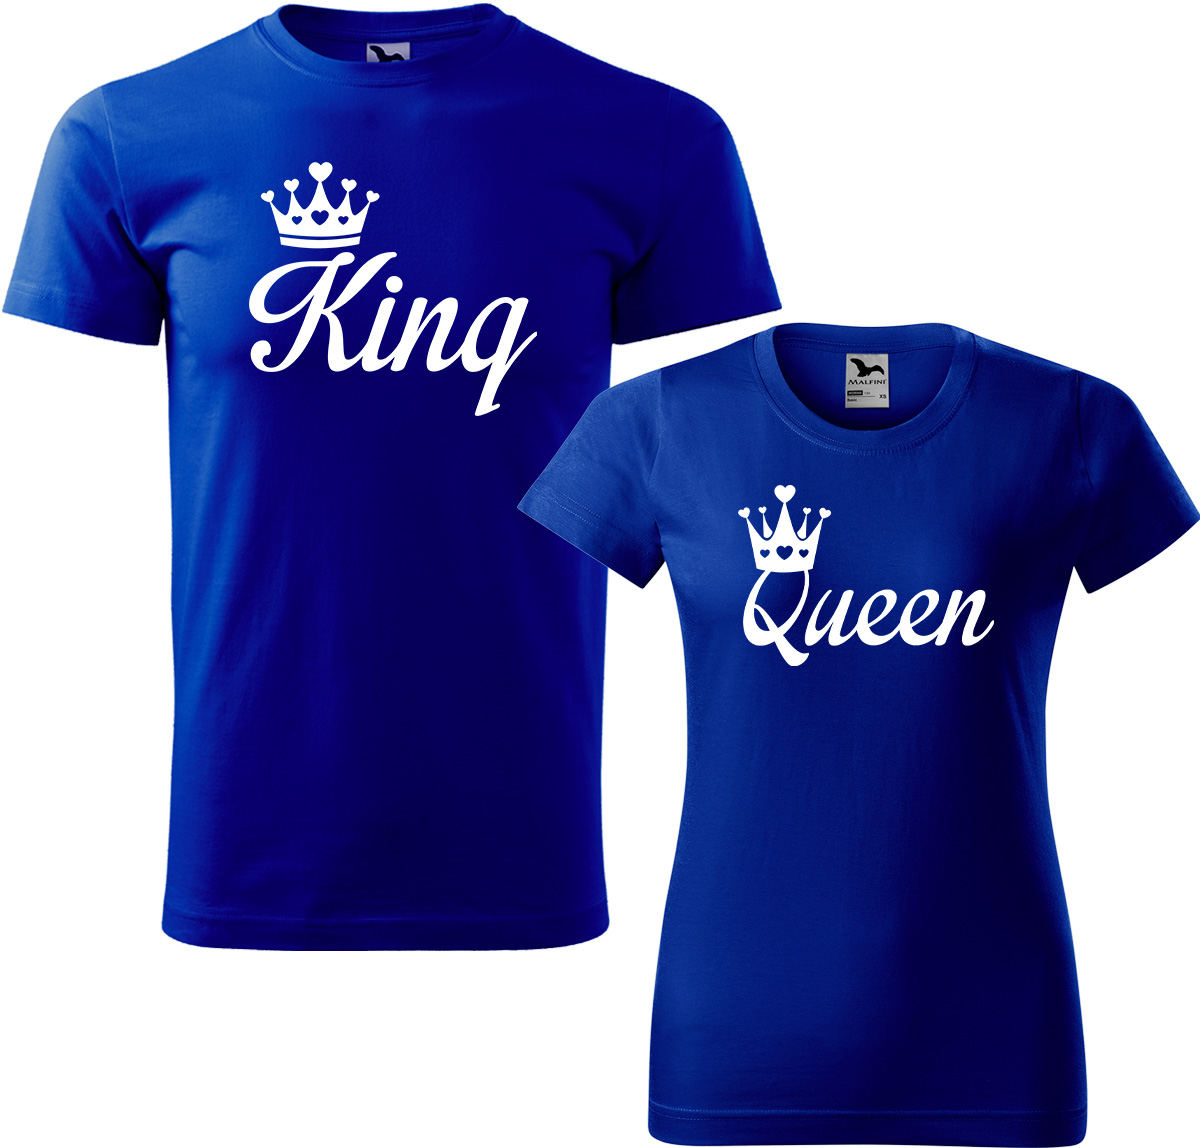 Trička pro páry - King a queen Barva: Královská modrá (05), Velikost dámské tričko: 3XL, Velikost pánské tričko: M